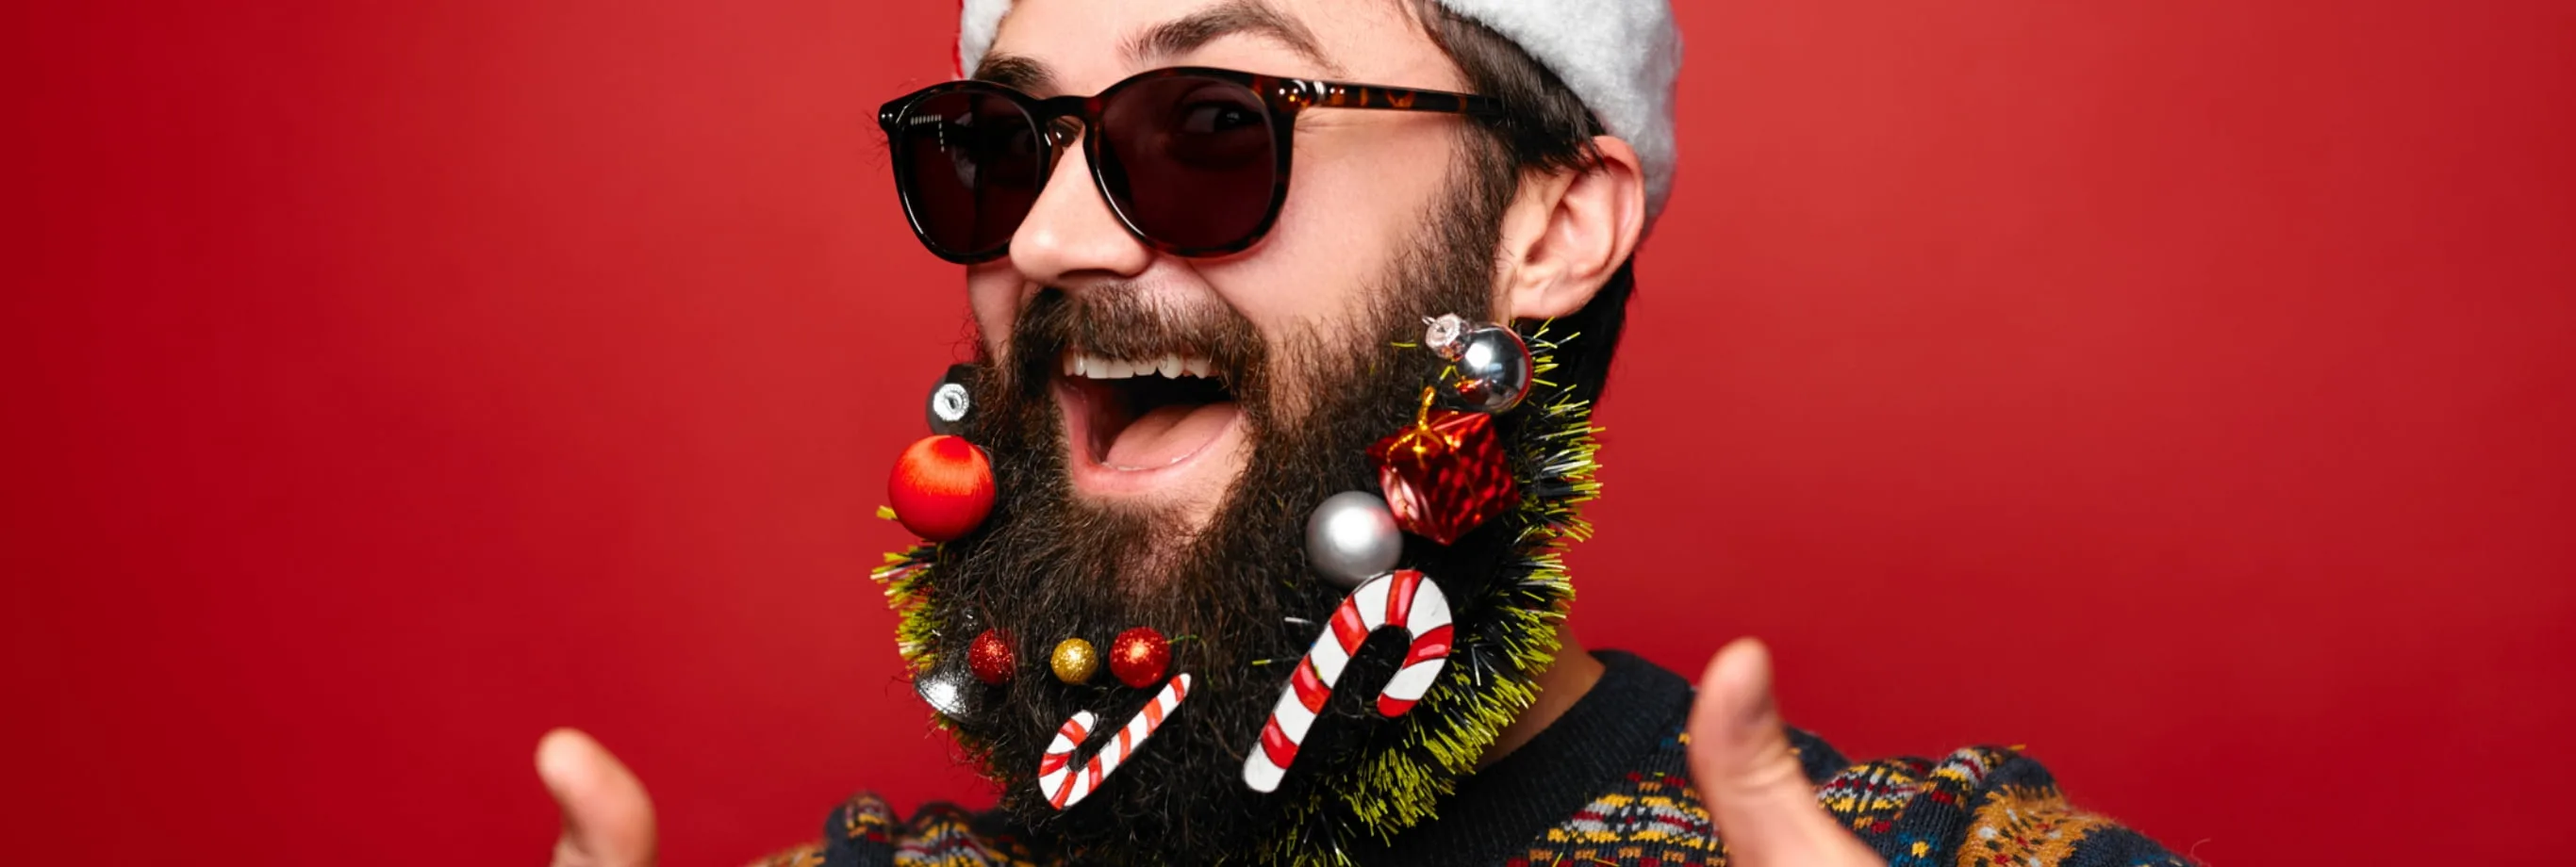 Barbe de Noël avec paillettes et boules de Noël